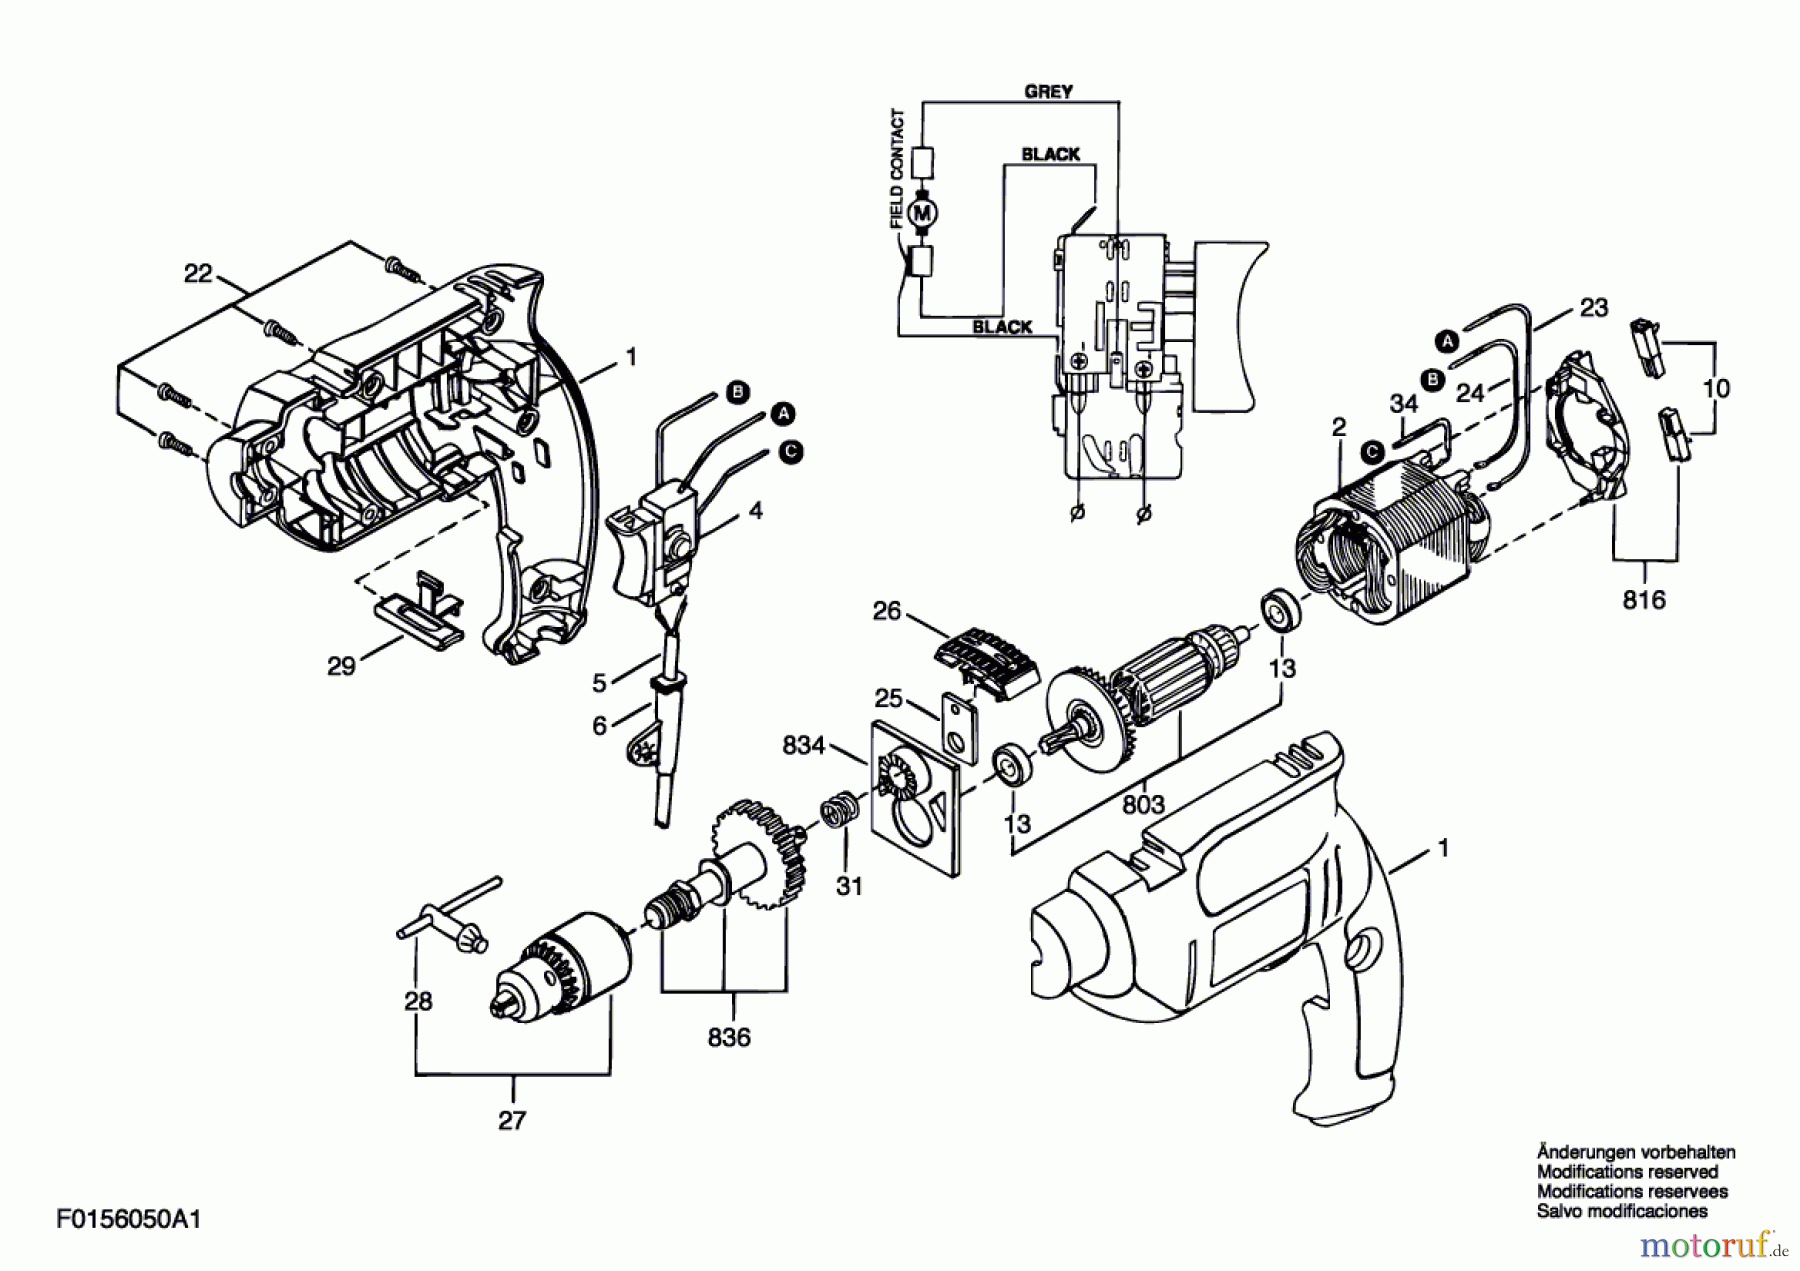  Bosch Werkzeug Ratsche 6050 Seite 1